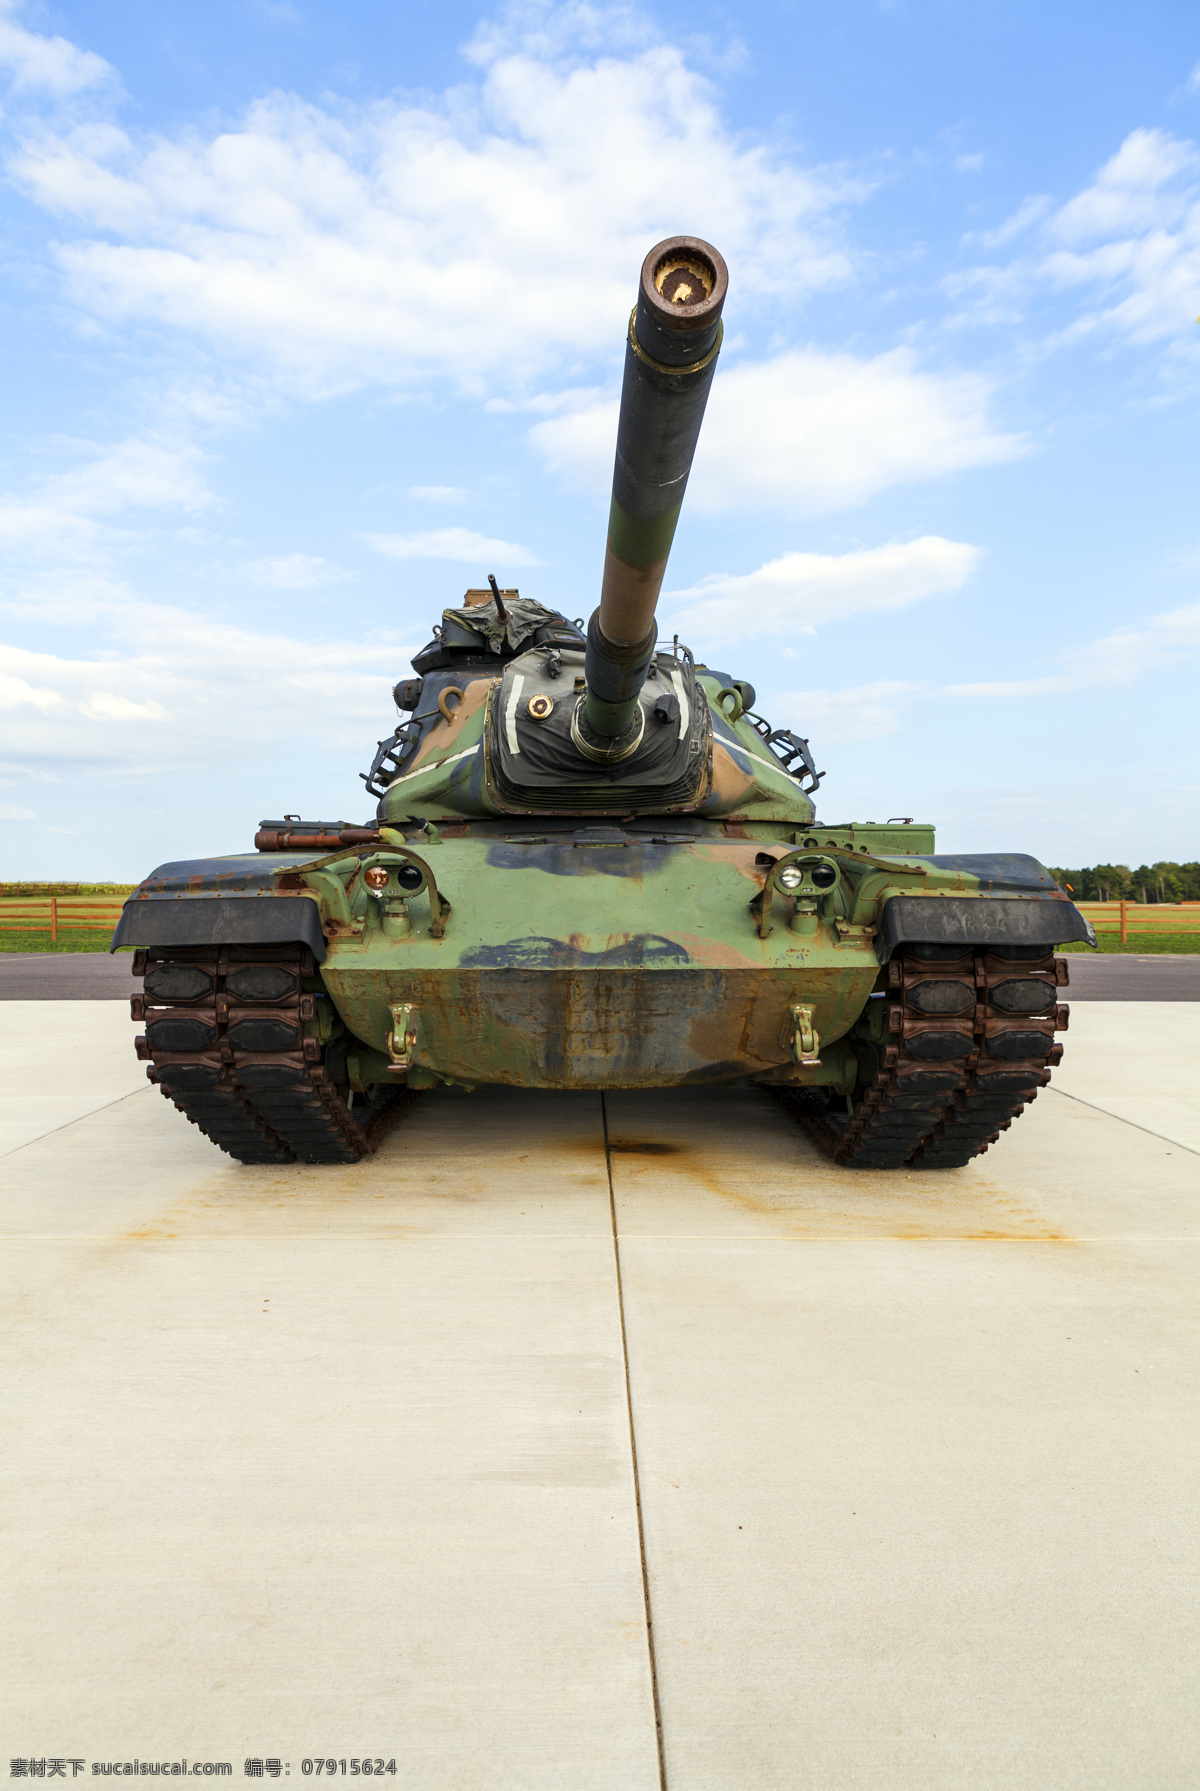 坦克 摄影图片 坦克摄影图片 坦克车 装甲车 军事武装 军事装备 现代武器装备 军事武器 交通工具 现代科技 白色